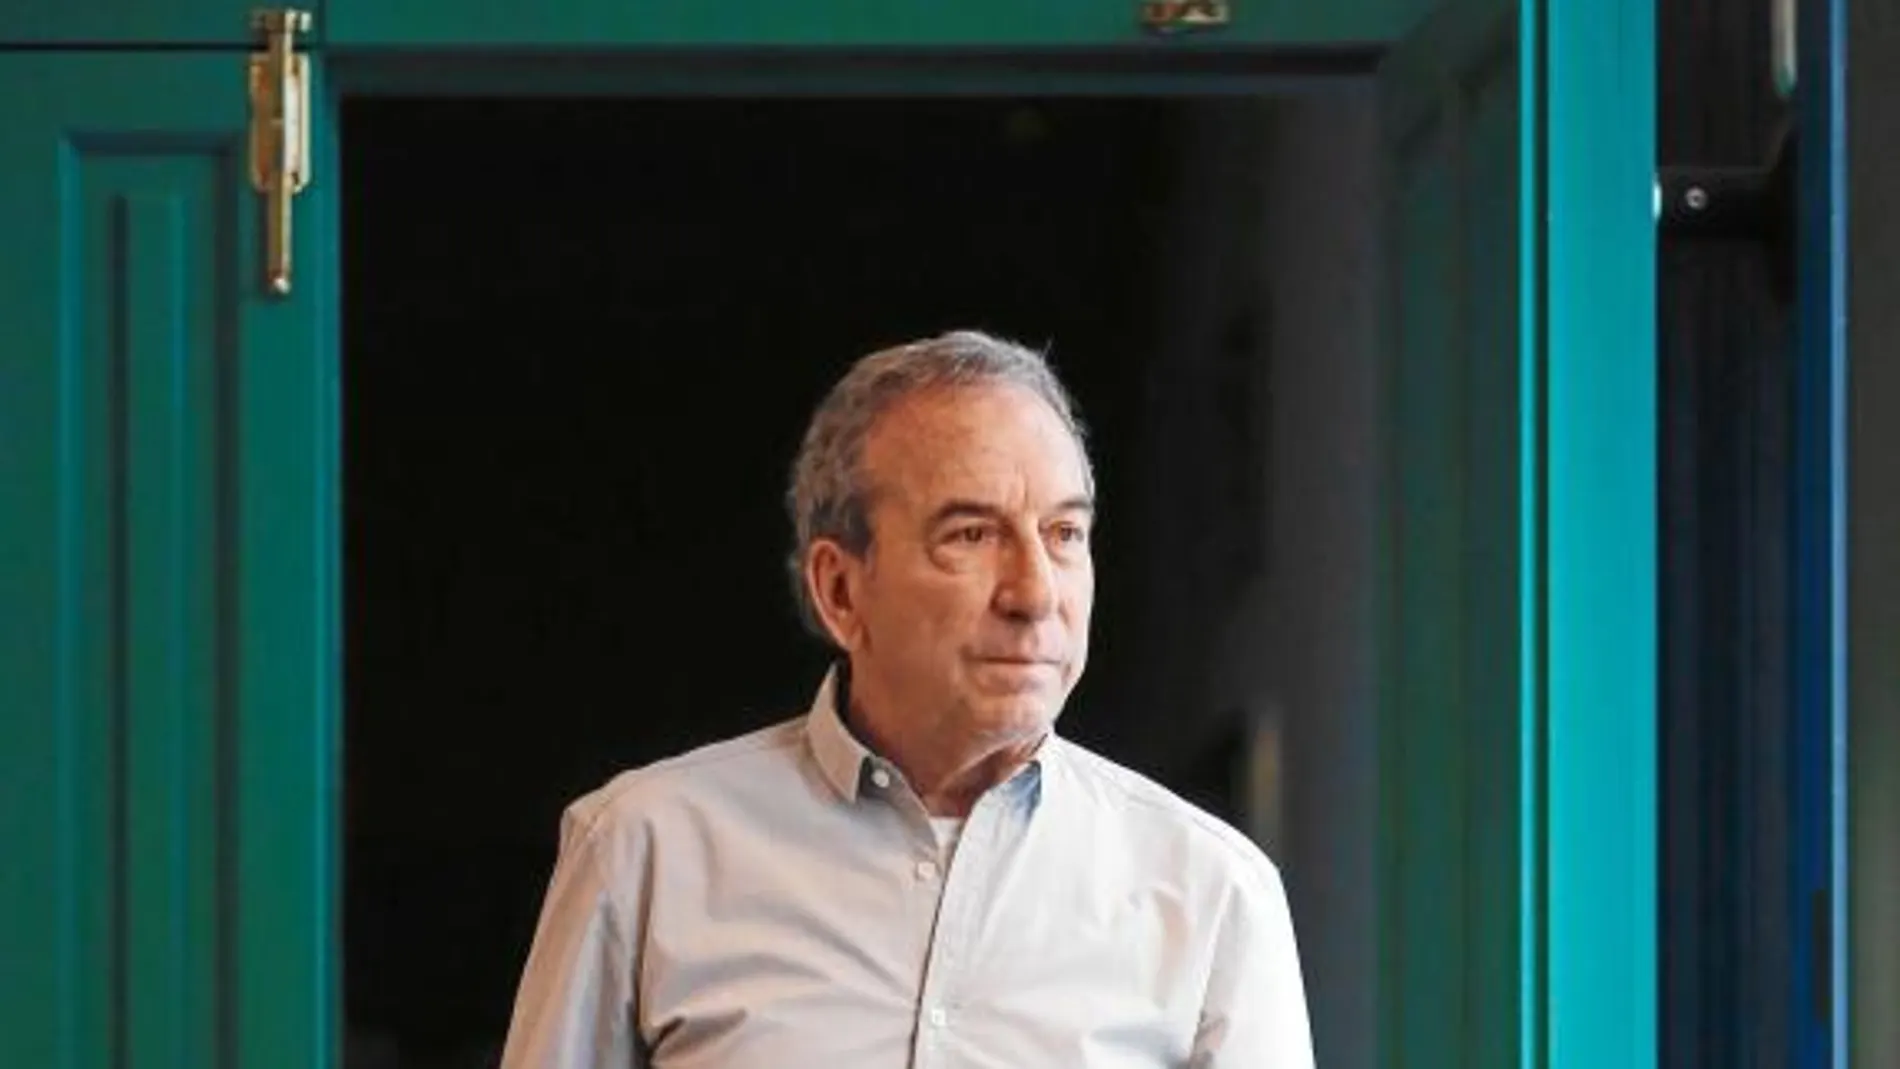 José Luis Perales